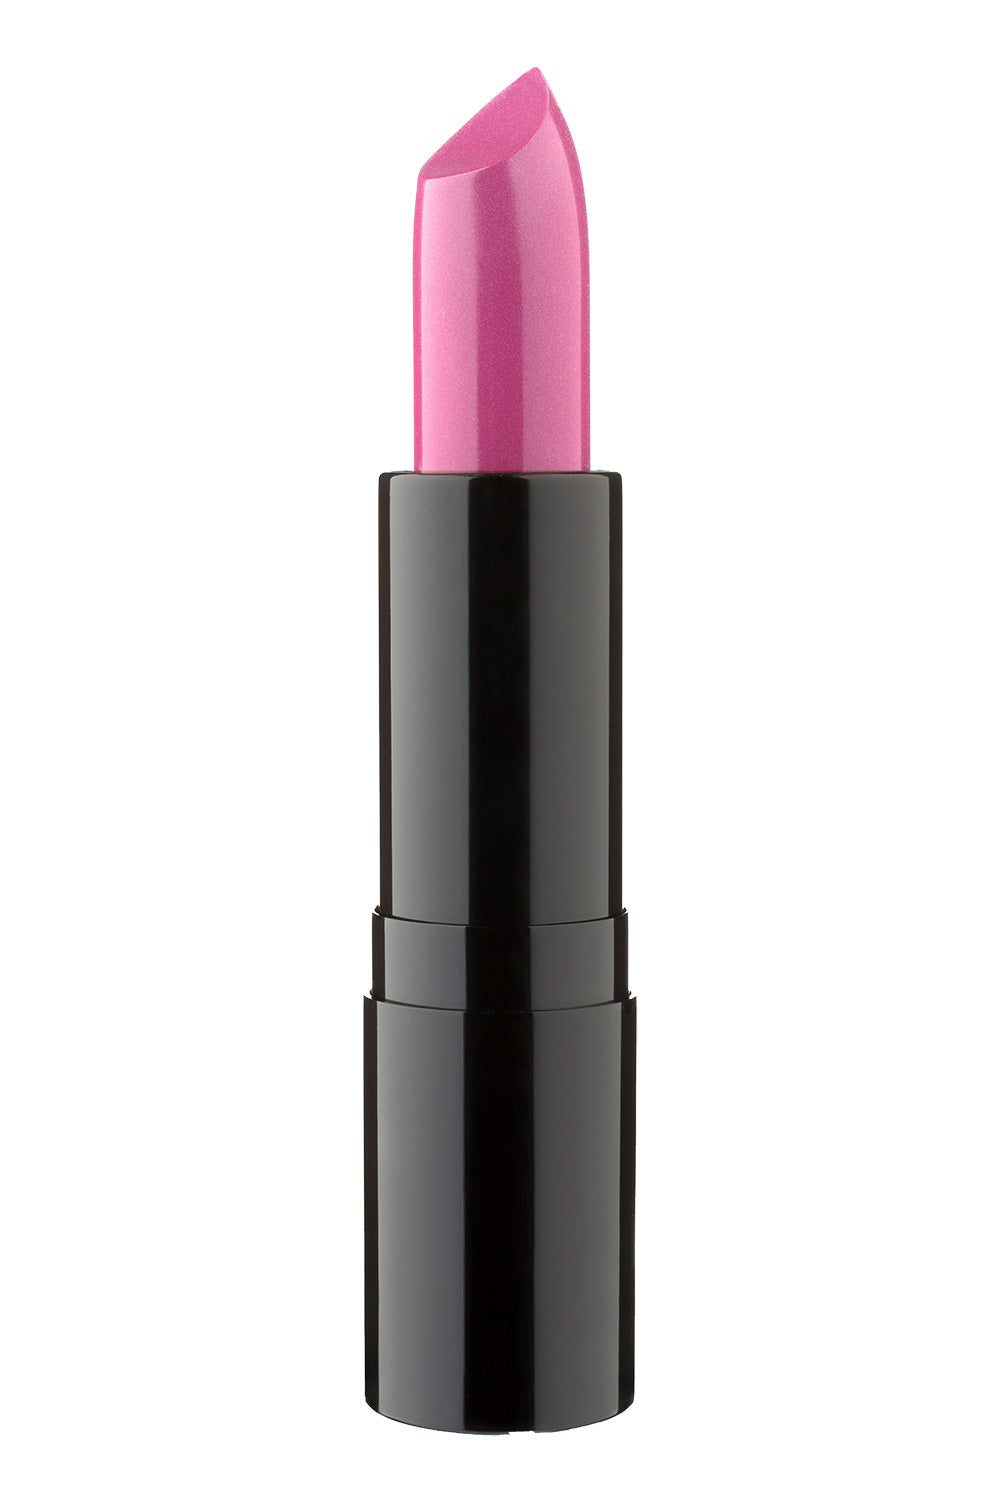 Ocean Drive - Type 4 Lipstick